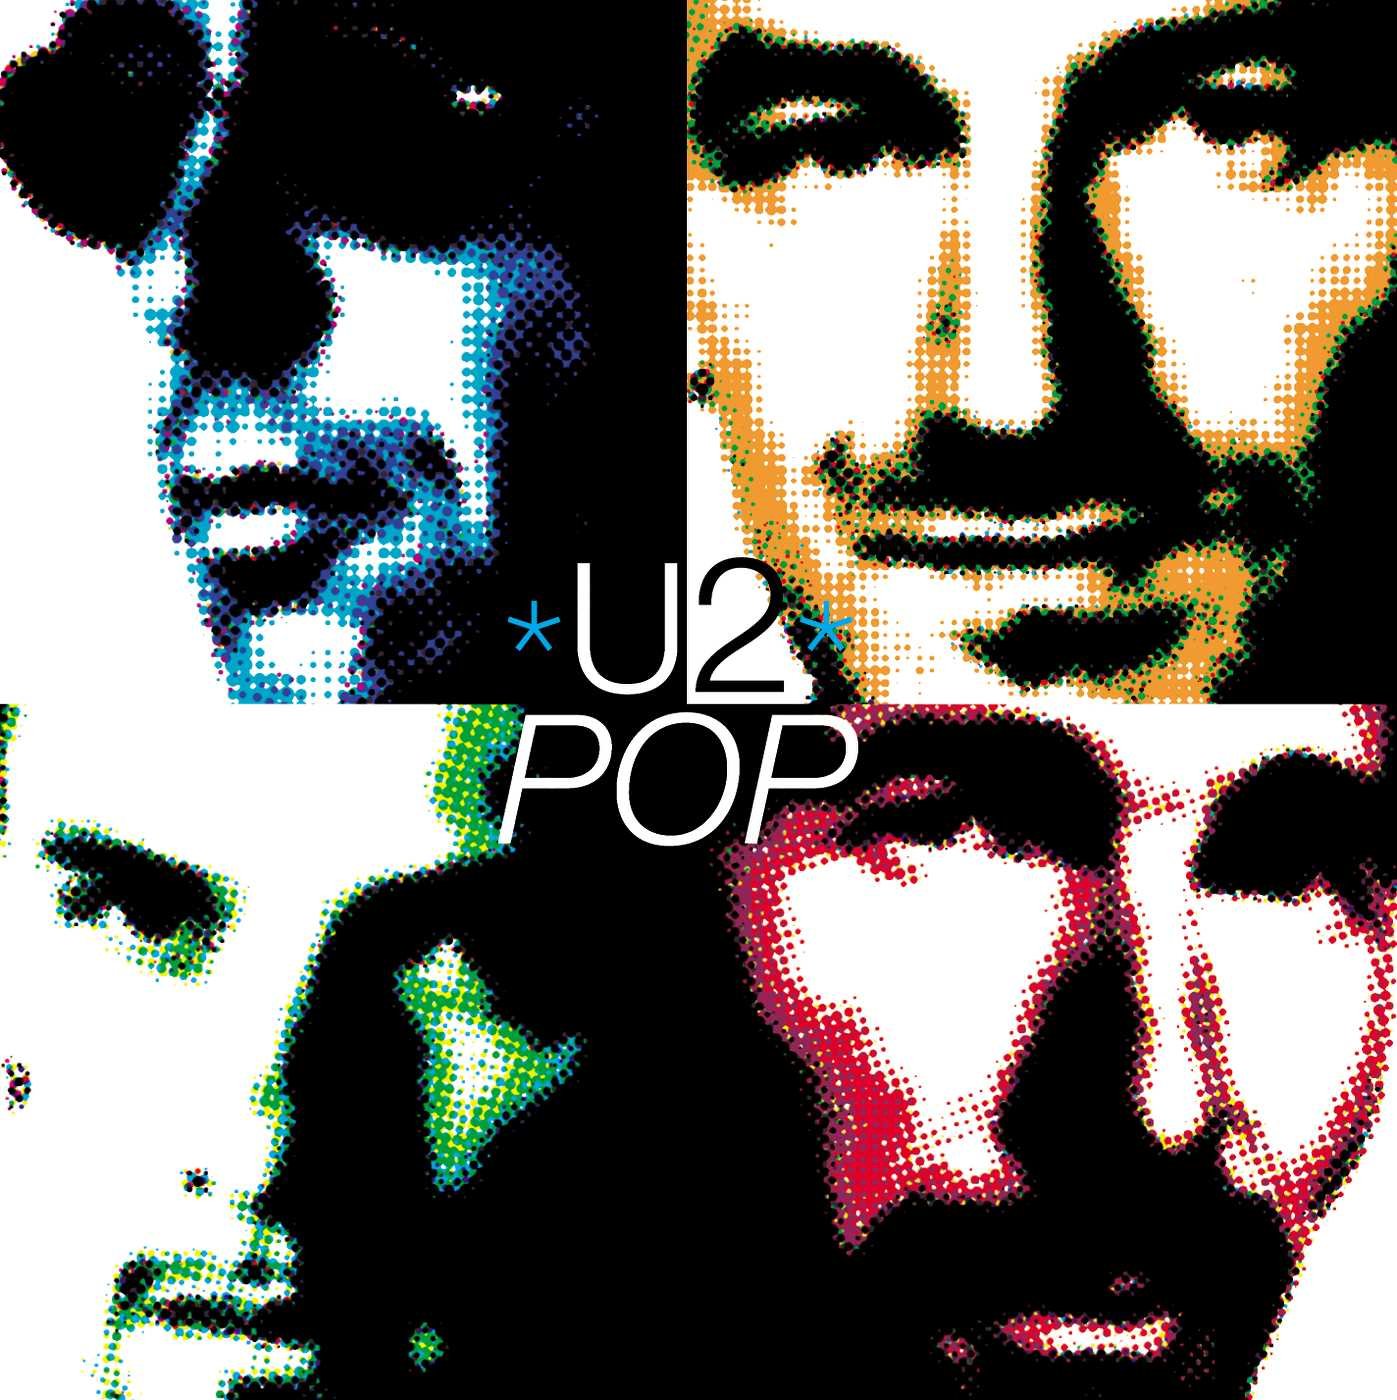 U2 "Pop" 2LP